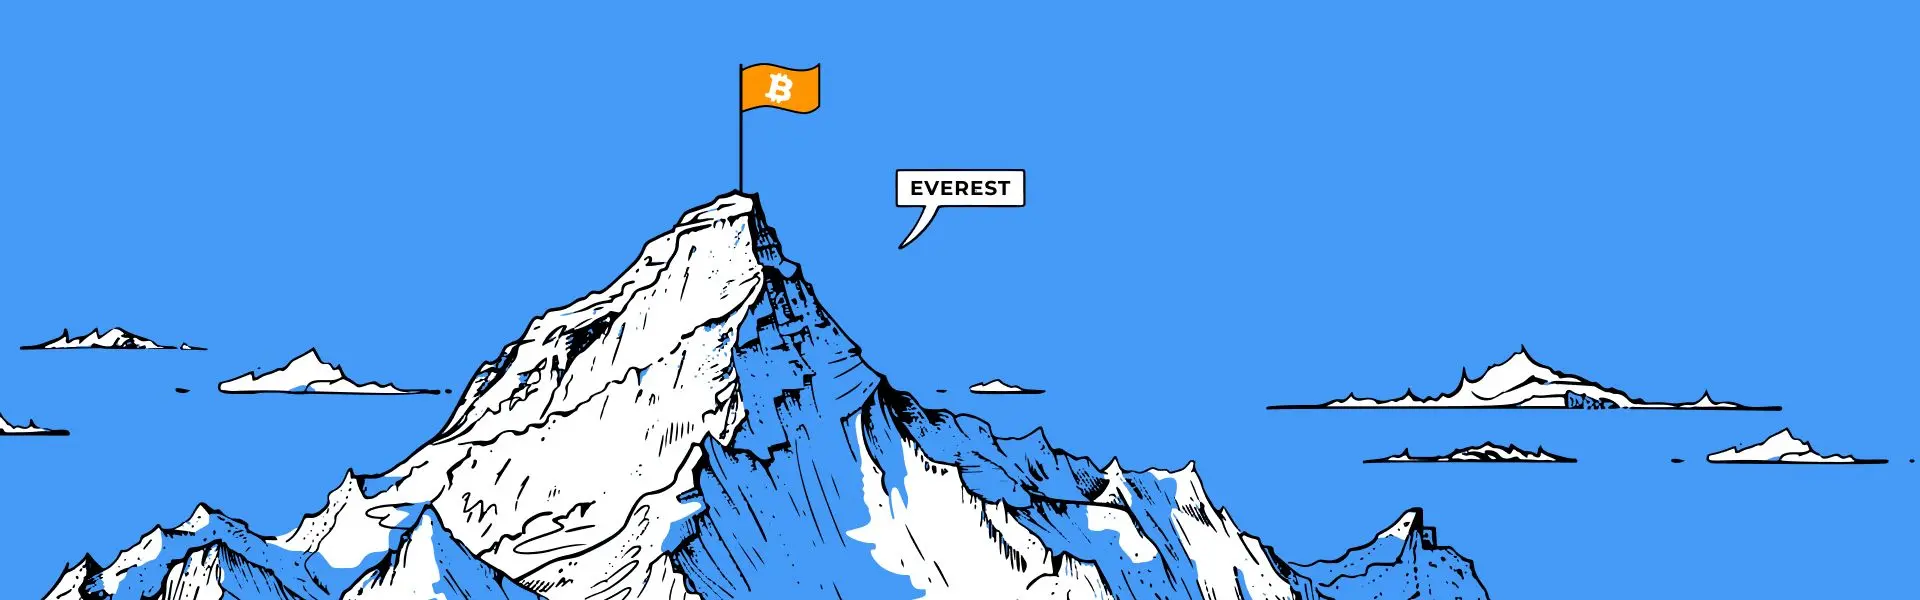 На вершині гори Еверест планують підняти прапор з логотипом Біткоїну.